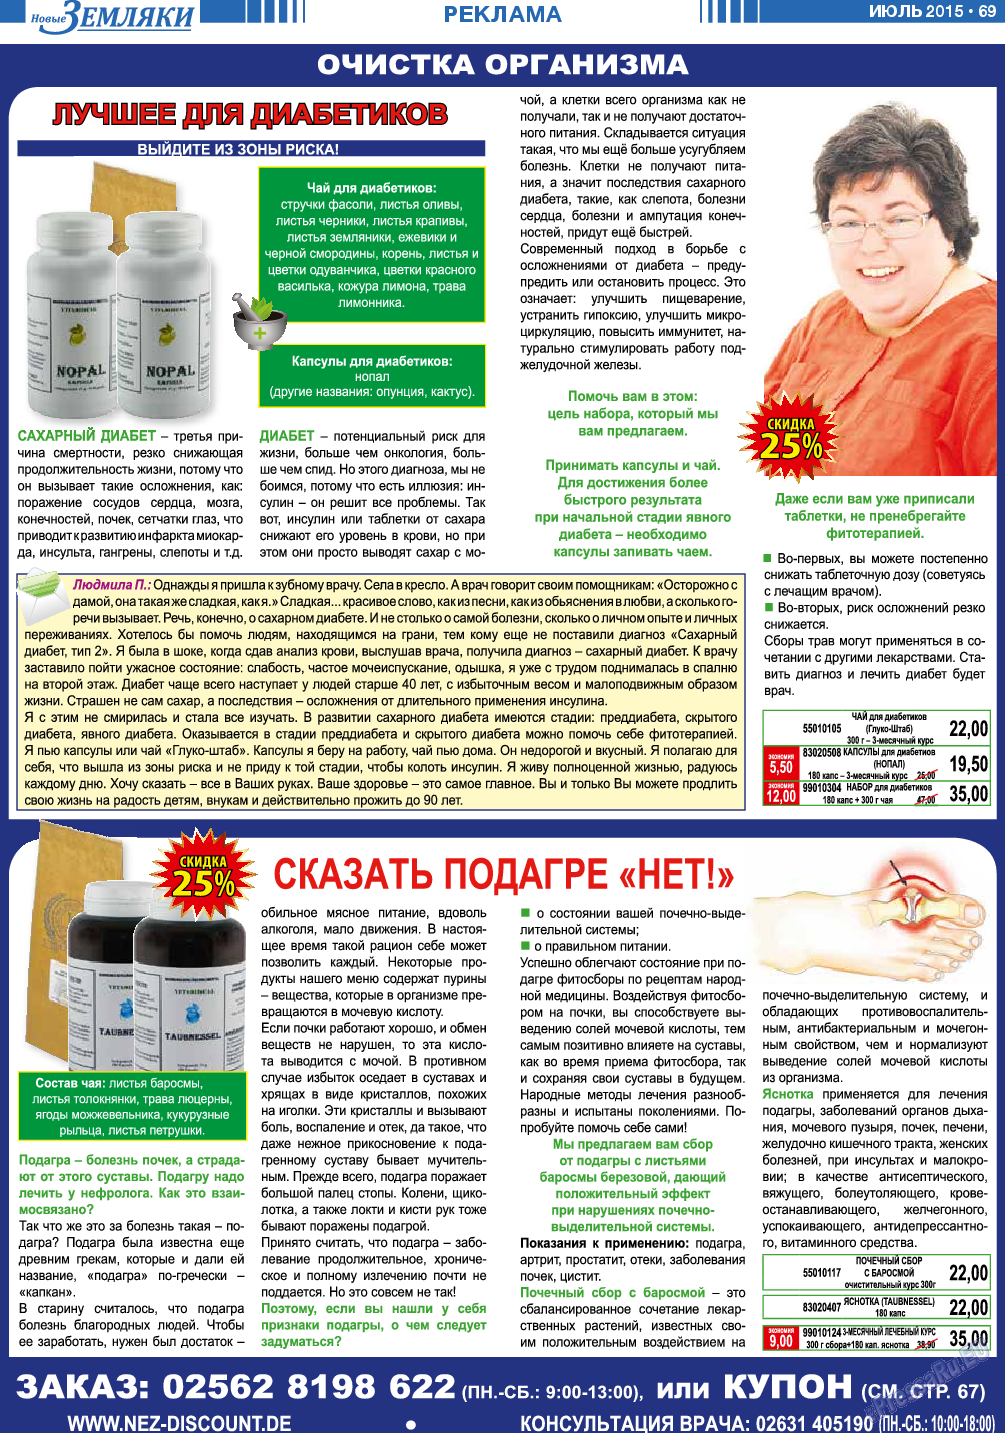 Новые Земляки (газета). 2015 год, номер 7, стр. 69